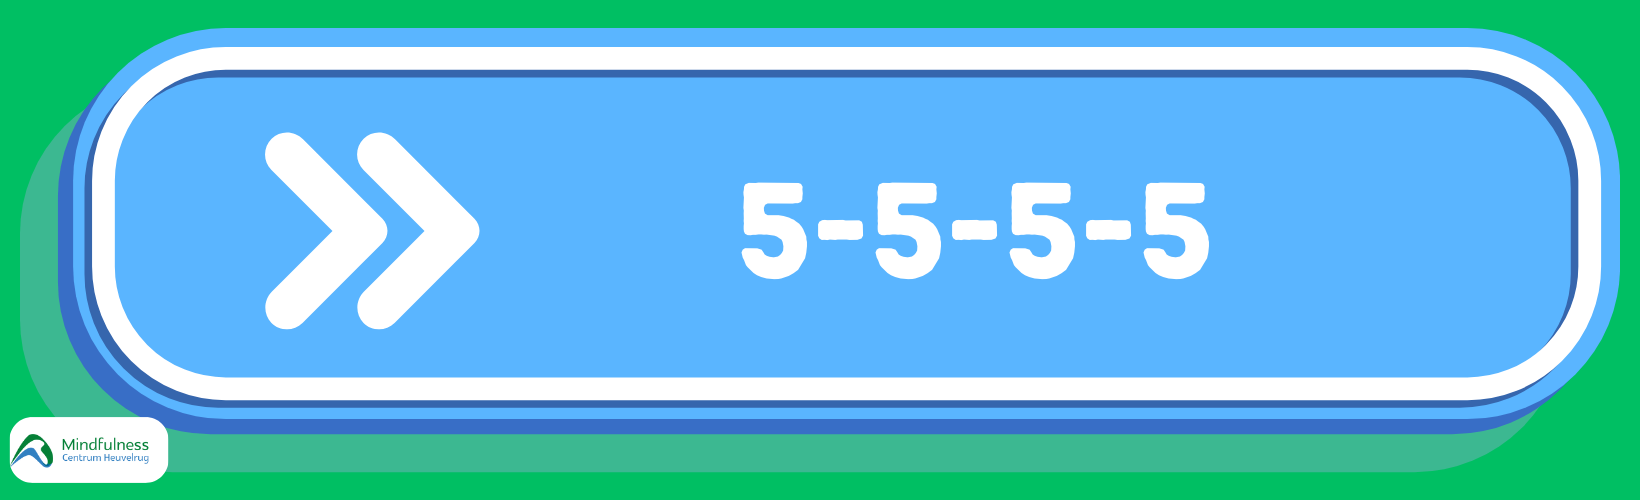 Header mindfulness in blauw wegwijzer teken en cijfers in wit 5-5-5-5 met mindfulness logo